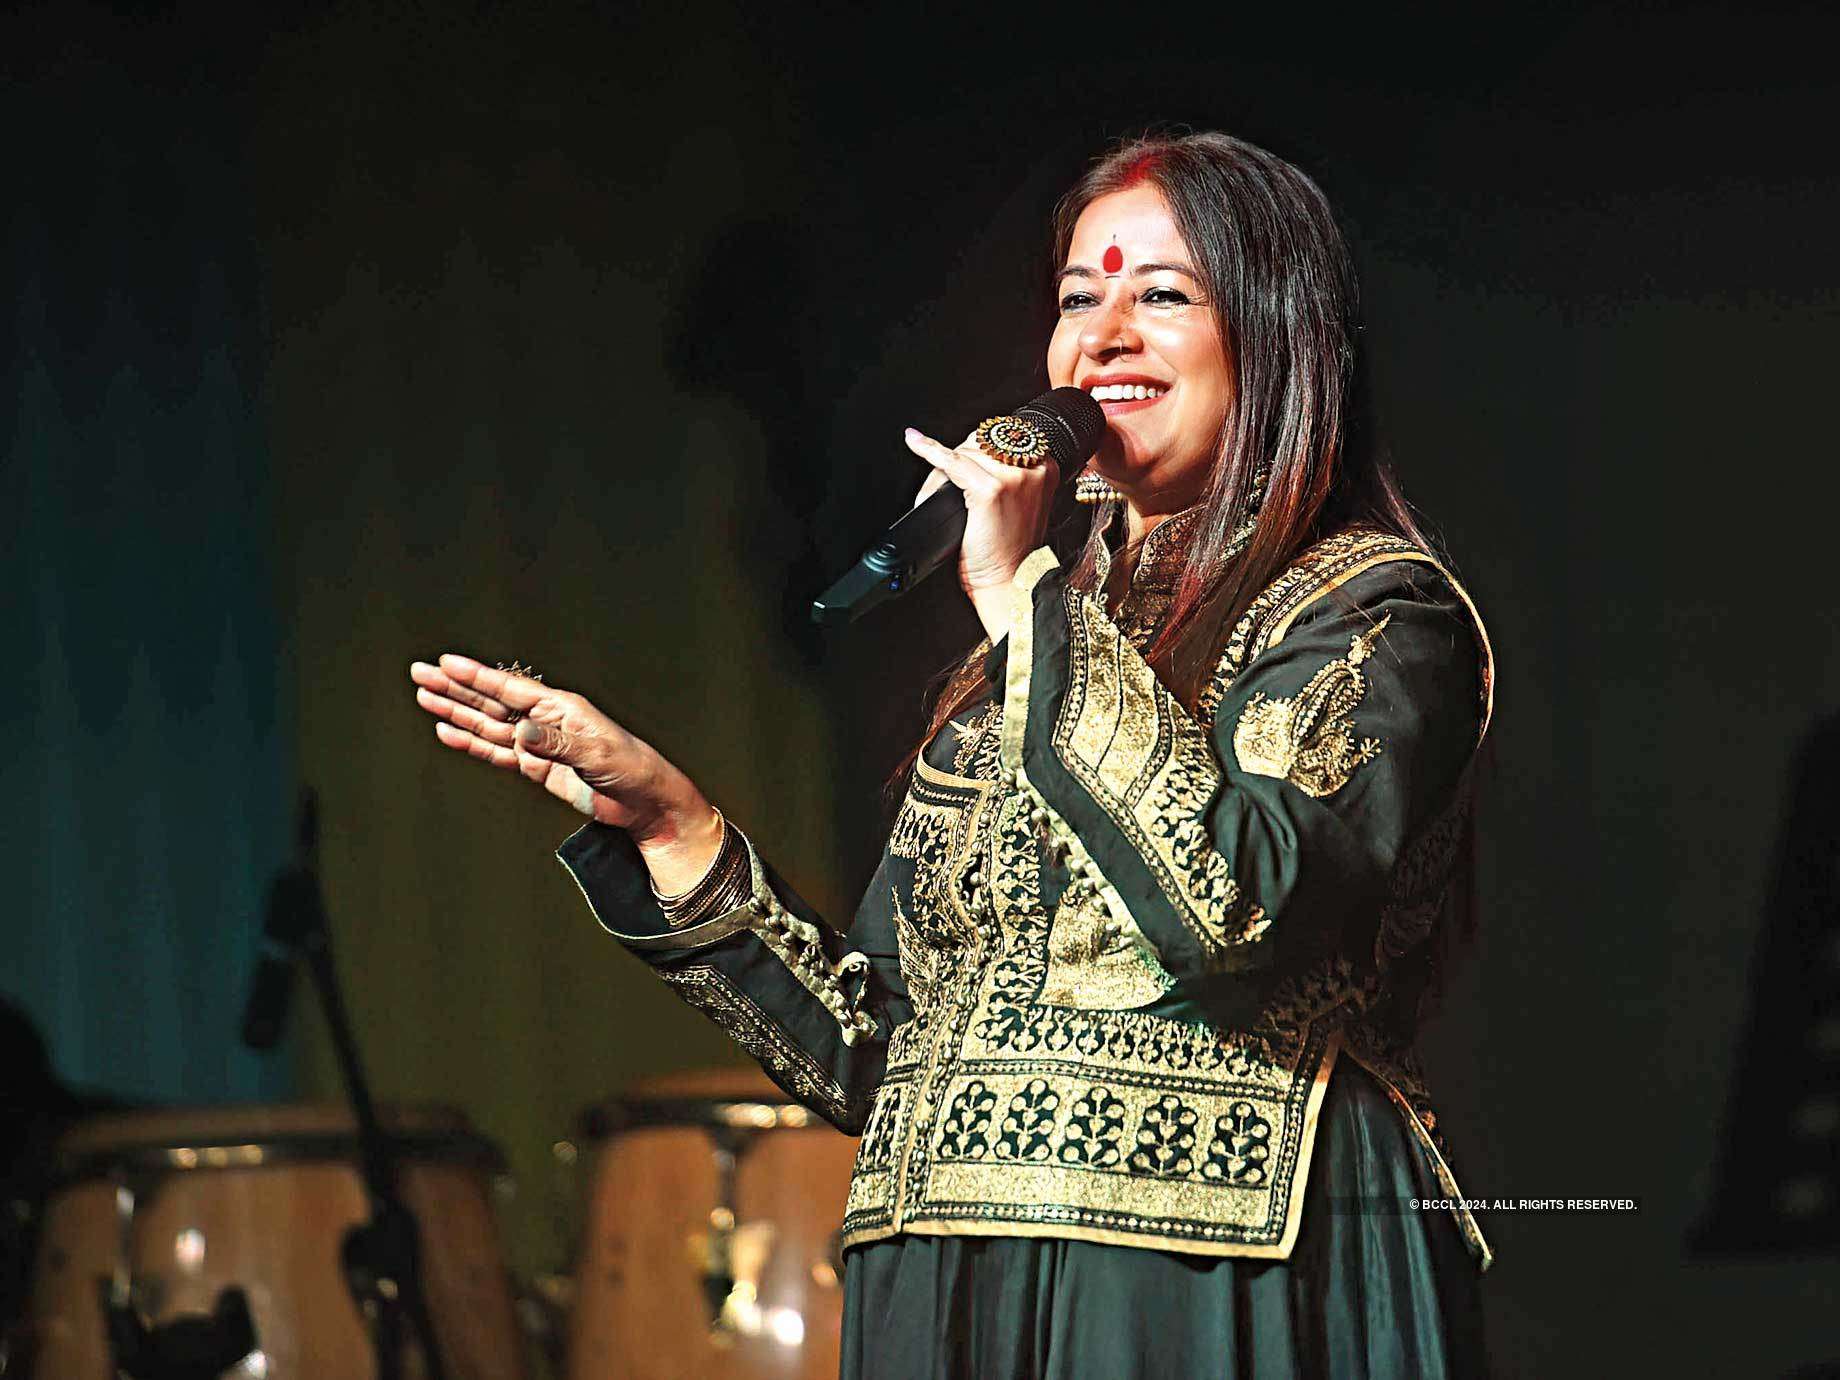 Rekha Bhardwaj performed her hit tracks in Noida